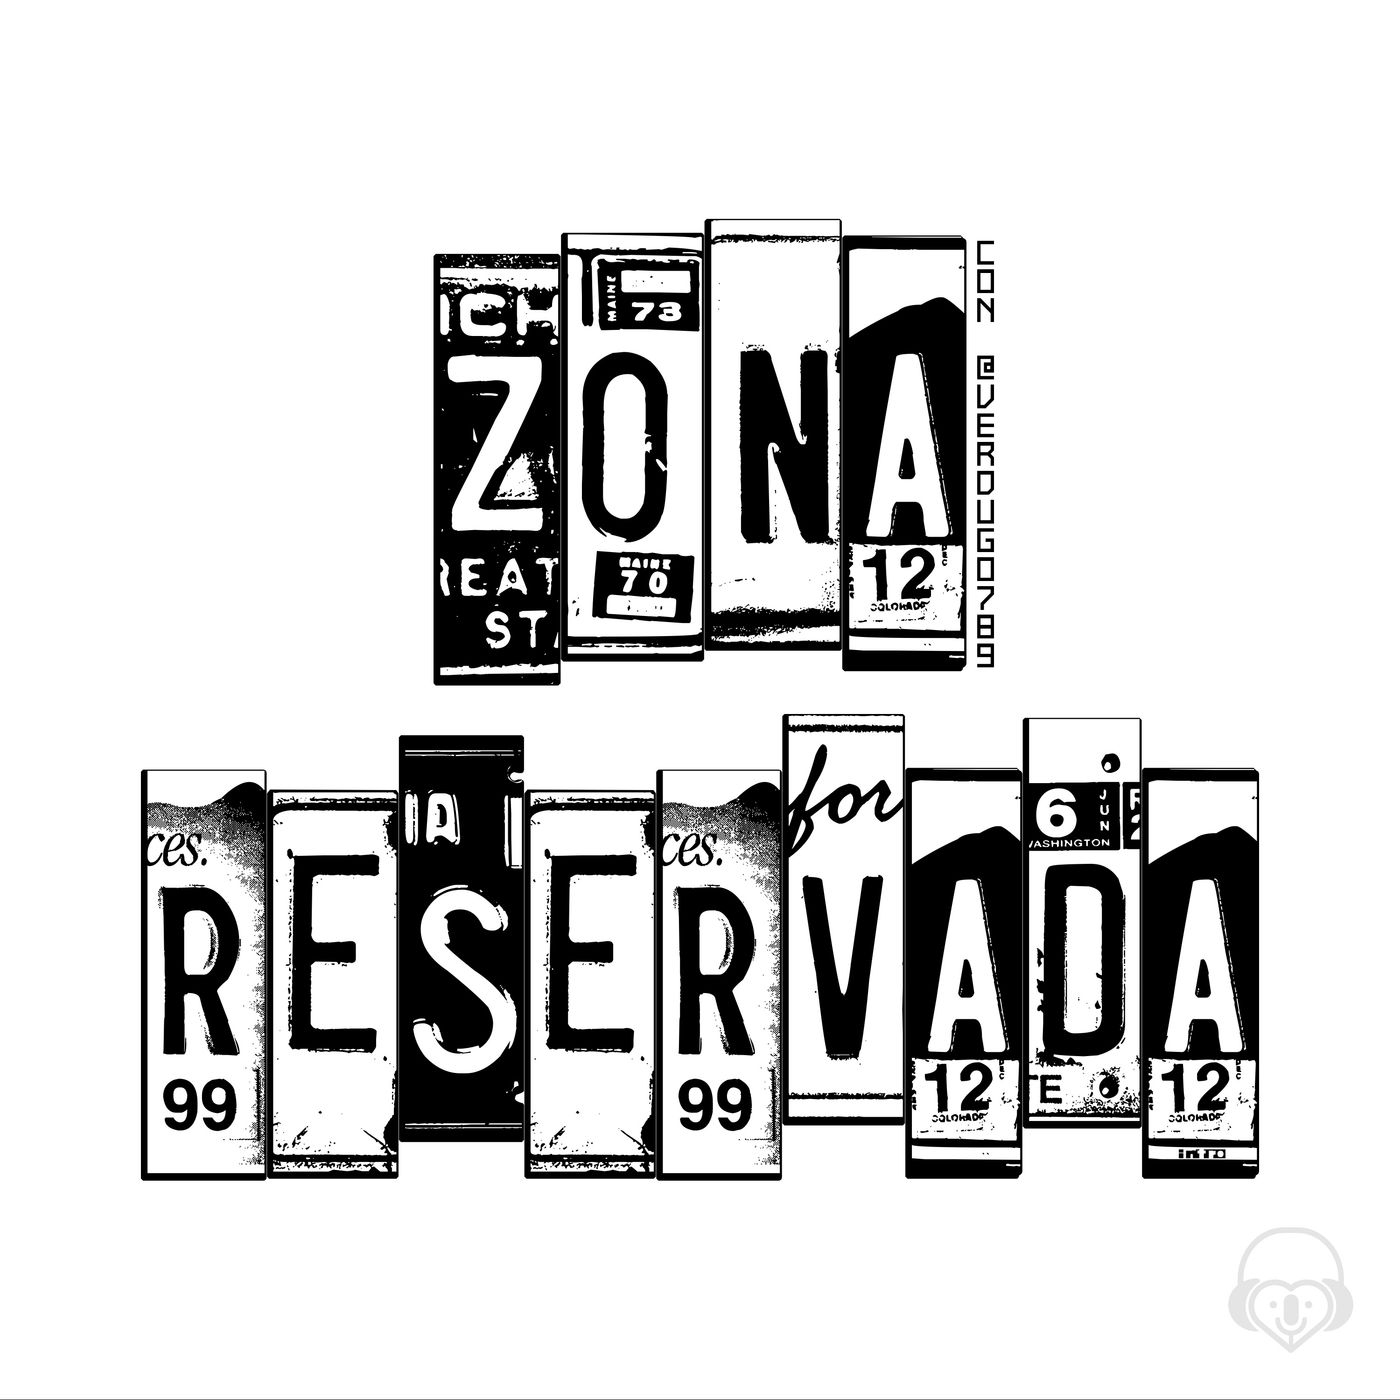 Zona reservada con @verdugo789 (255)